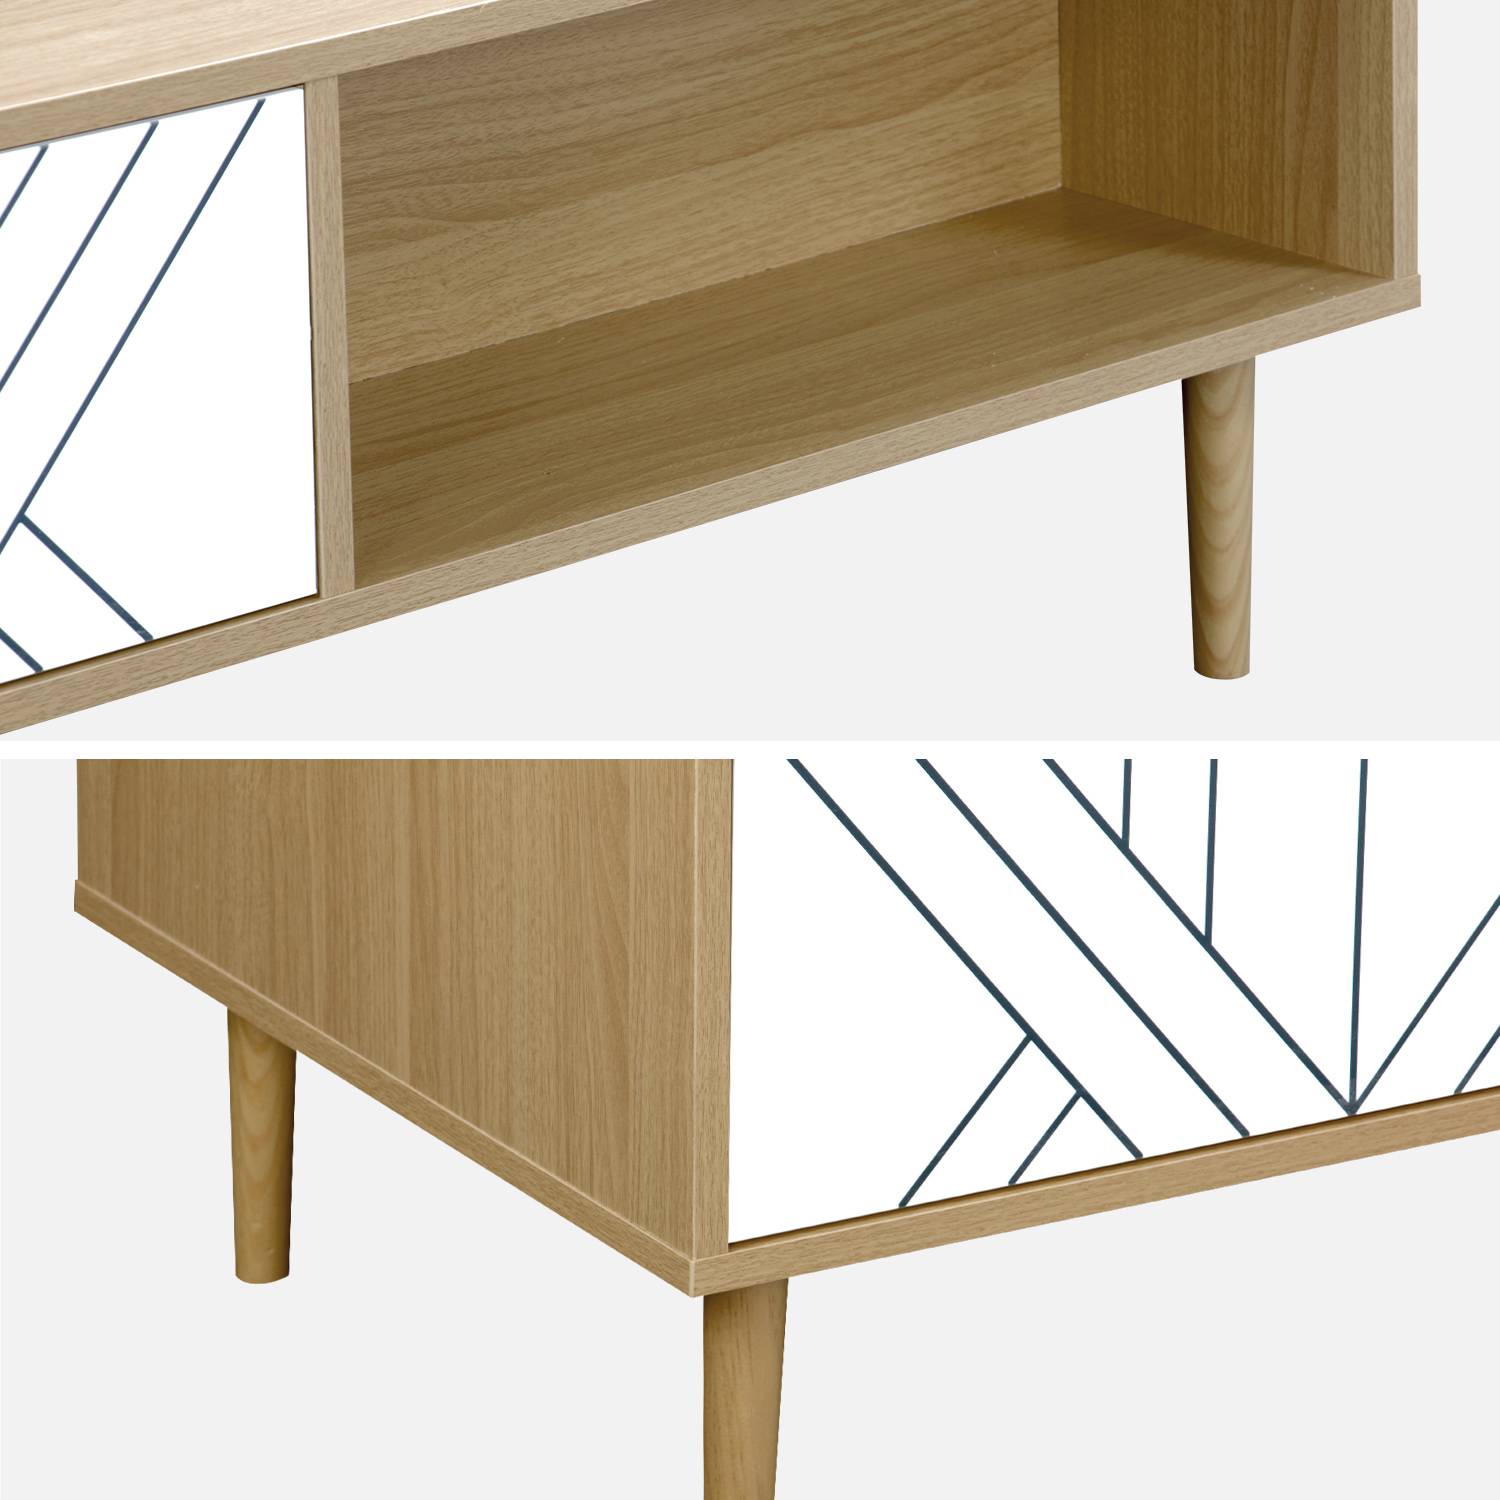 Table basse en décor bois et blanc - Mika - 2 tiroirs, 2 espaces de rangement, L 120 x l 55 x H 40cm,sweeek,Photo6